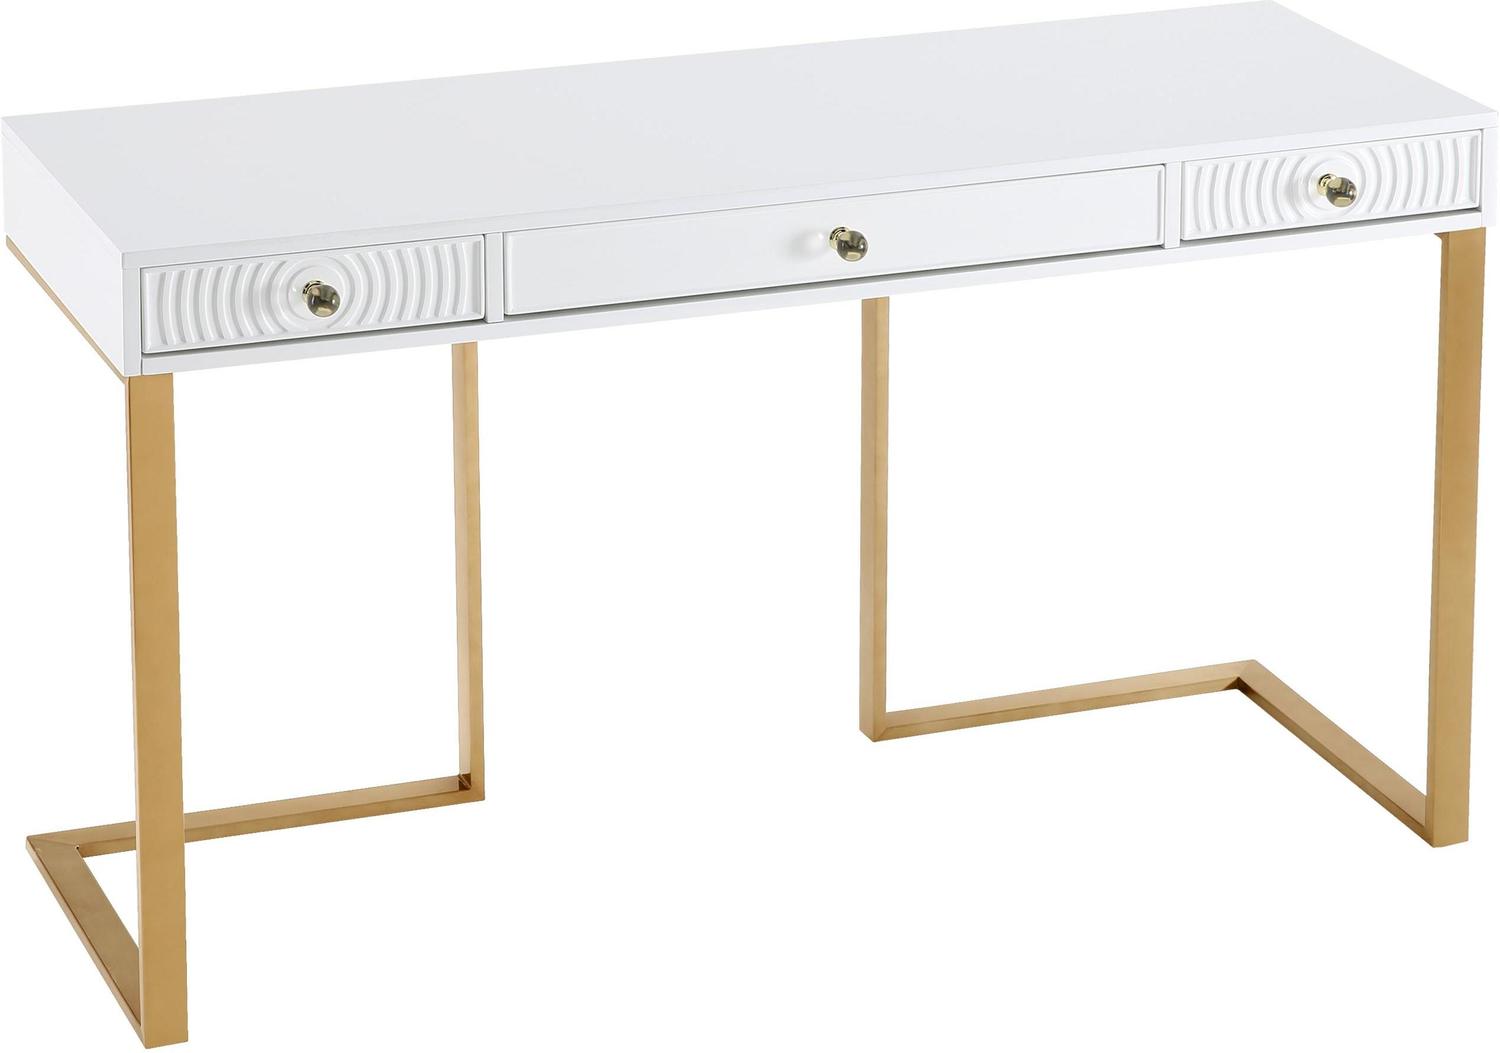 ceo office decor Contemporary Design Furniture Desks White